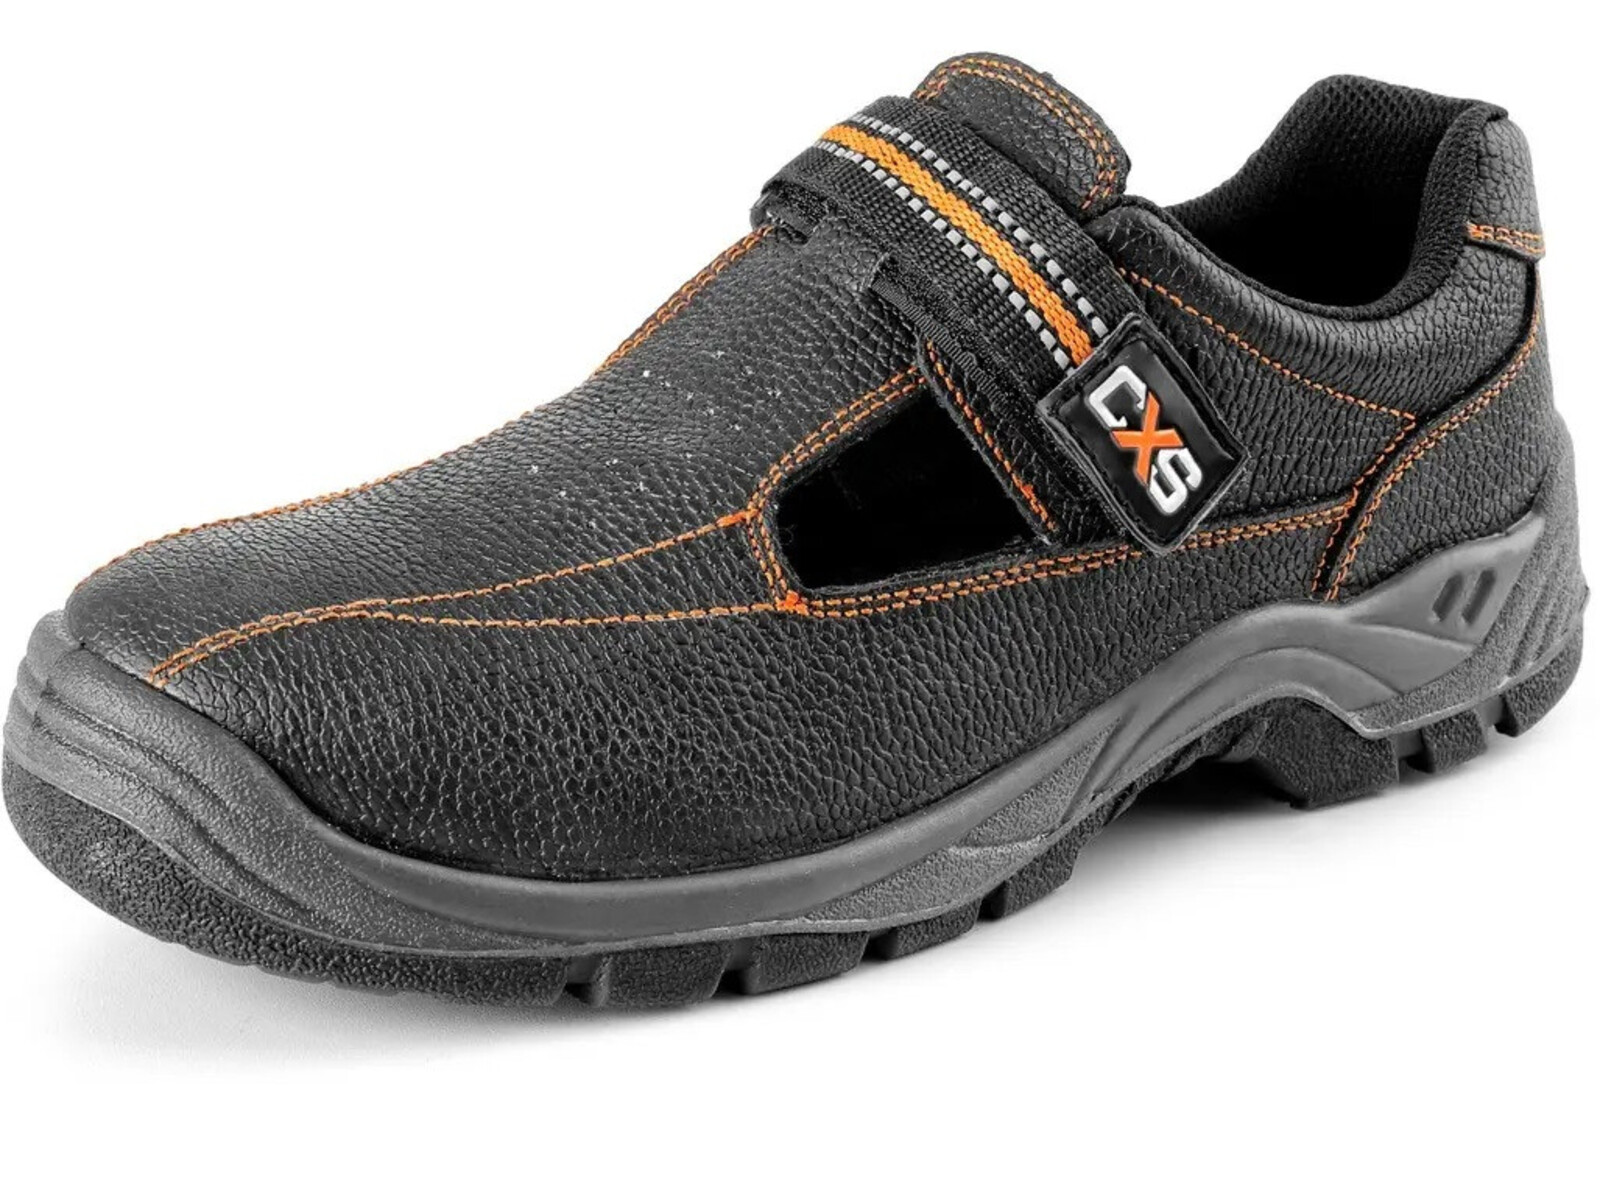 Pracovné sandále CXS Stone Nefrit O1 FO SRC - veľkosť: 37, farba: čierna/oranžová